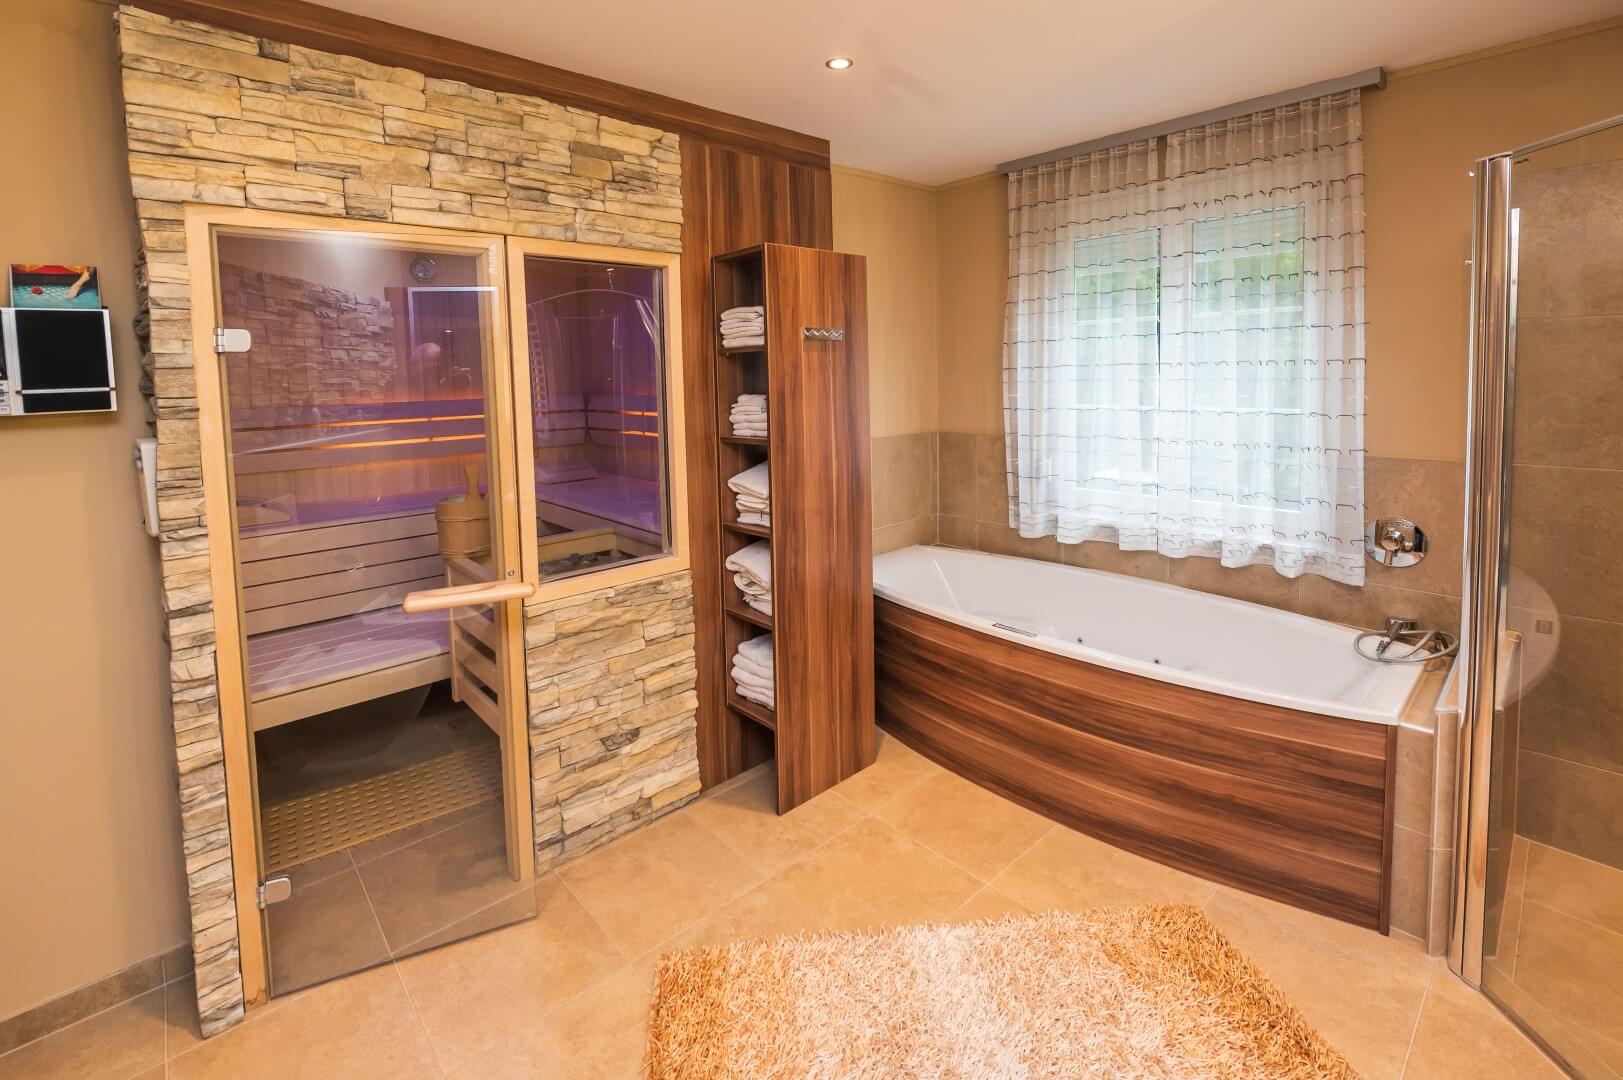 Ein moderner Wellnessbereich mit Sauna und Eckbadewanne, umgeben von warmen Holz- und Steinakzenten.